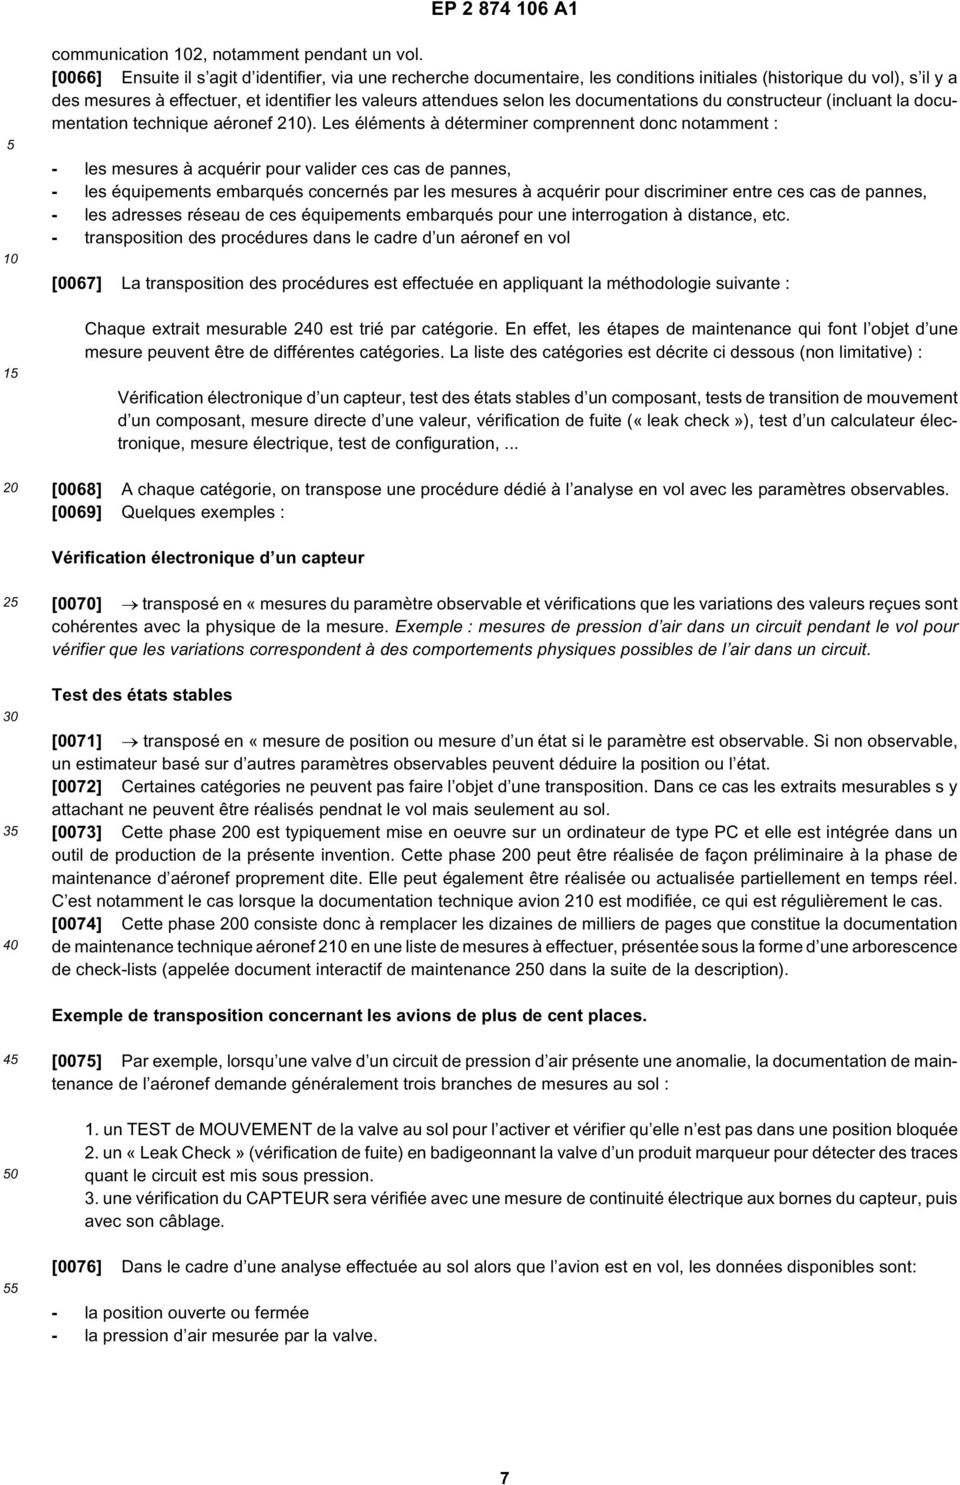 documentations du constructeur (incluant la documentation technique aéronef 2).